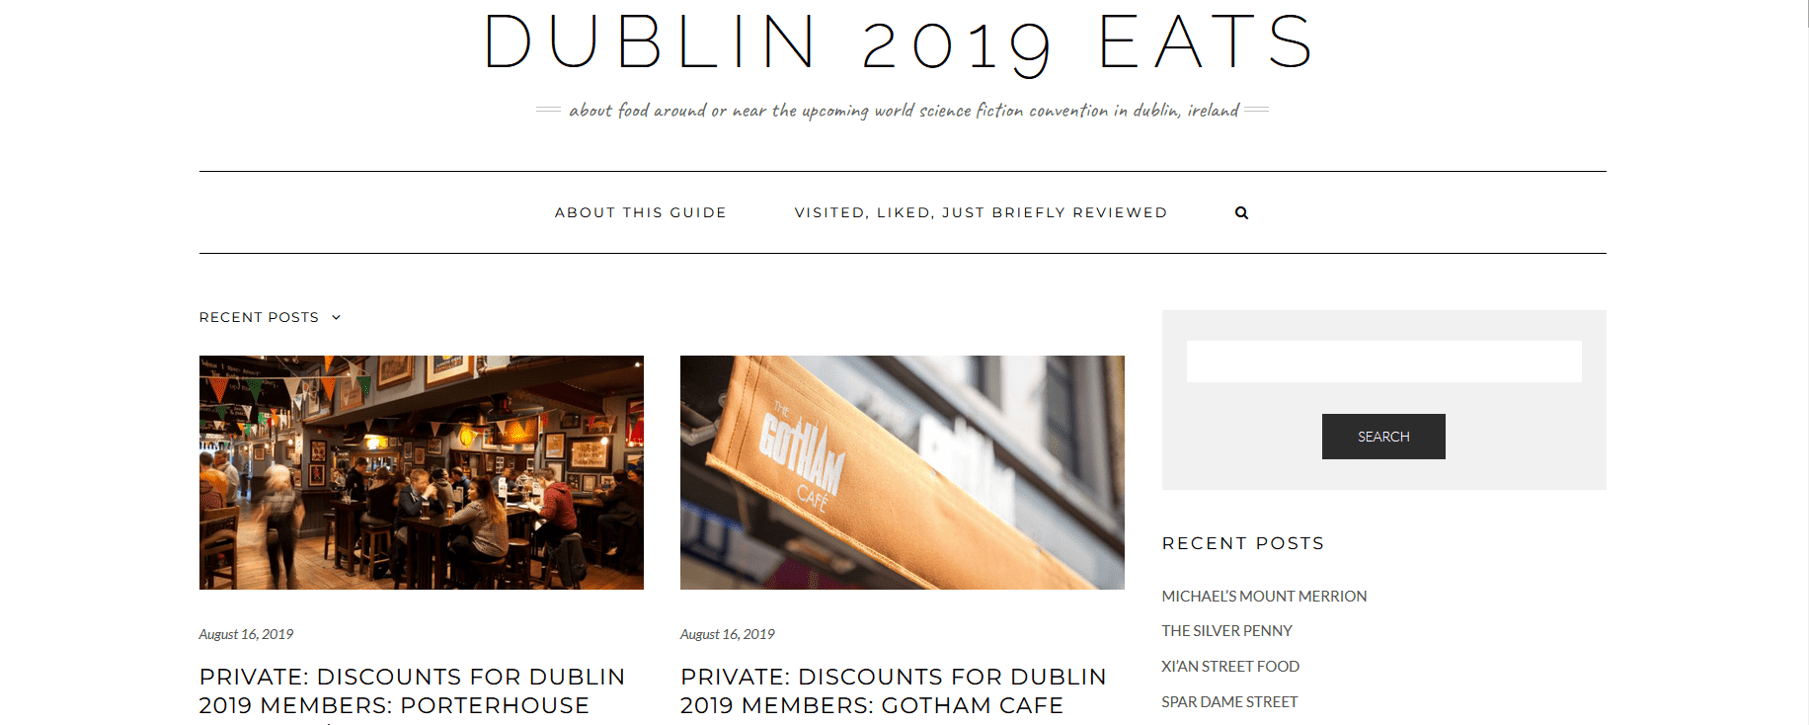 Dublin2019 Eats header